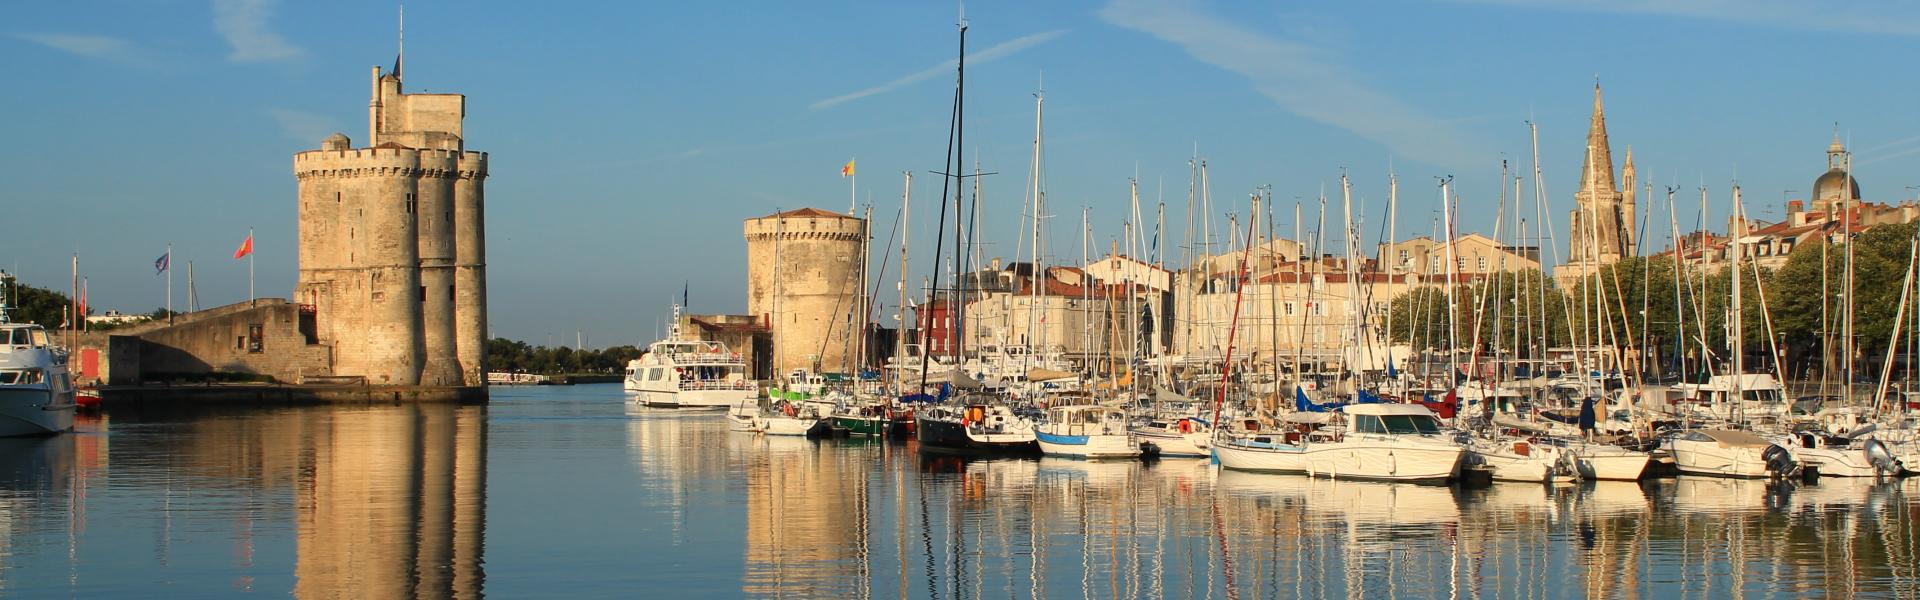 Ferienwohnungen & Ferienhäuser für Urlaub in La Rochelle - Casamundo